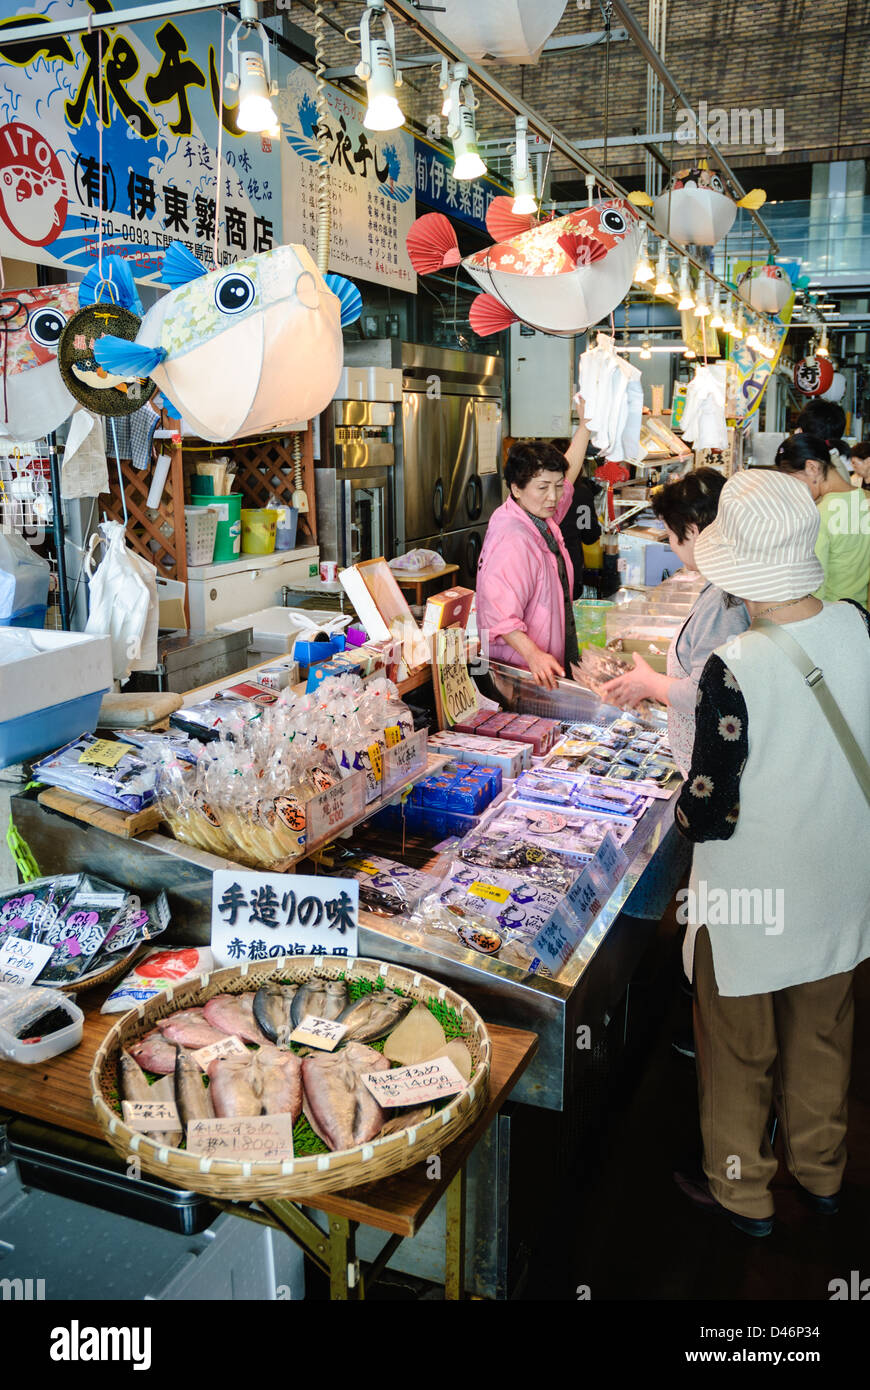 Giftigen Fugu (Kugelfisch) und anderen Meeresfrüchten im Angebot bei einem indoor Meeresfrüchte-Markt in Japan; Japanische Fischmarkt; Fisch Stand; Stockfoto